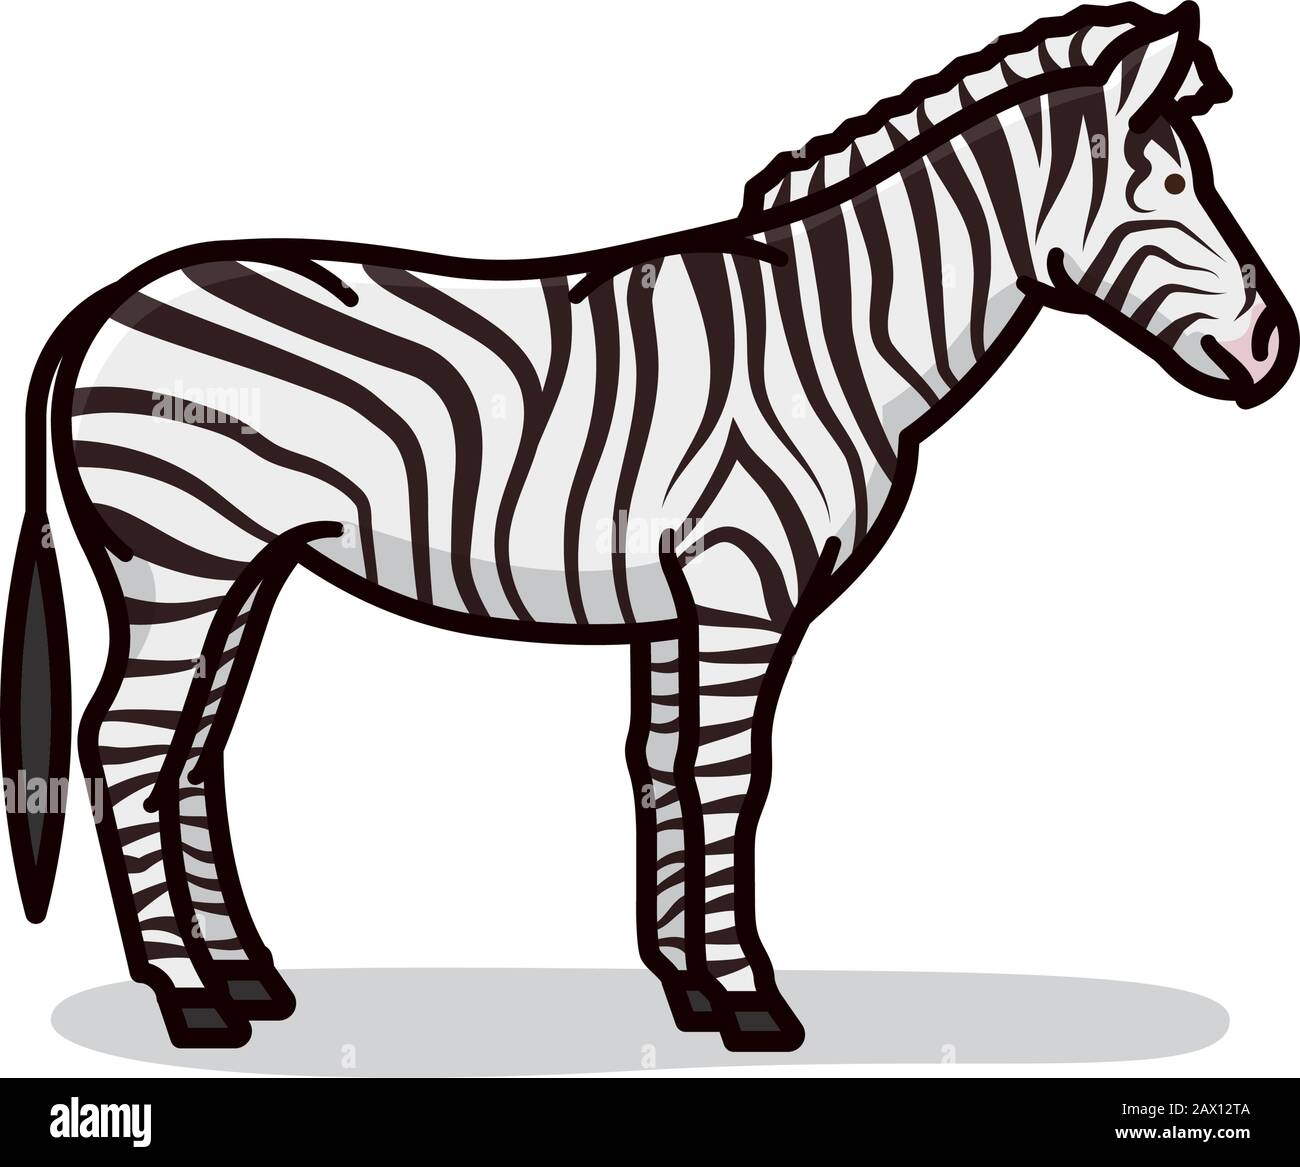 Immagine vettoriale isolata del cartone animato zebra. Fauna africana e simbolo di modello camouflage. Illustrazione Vettoriale